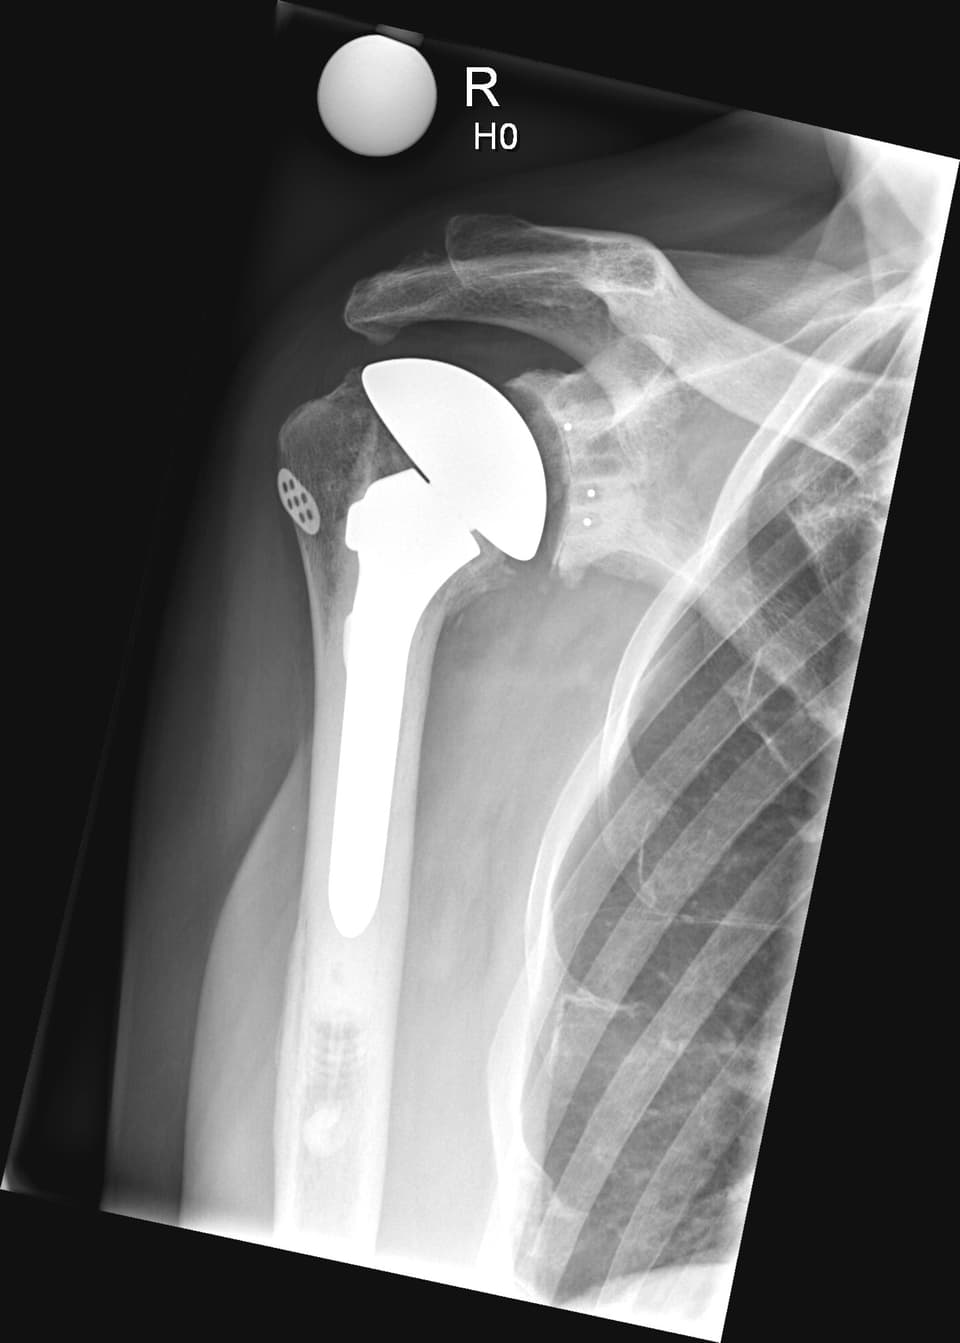 Anatomische Schulterprothese im Röntgenbild.